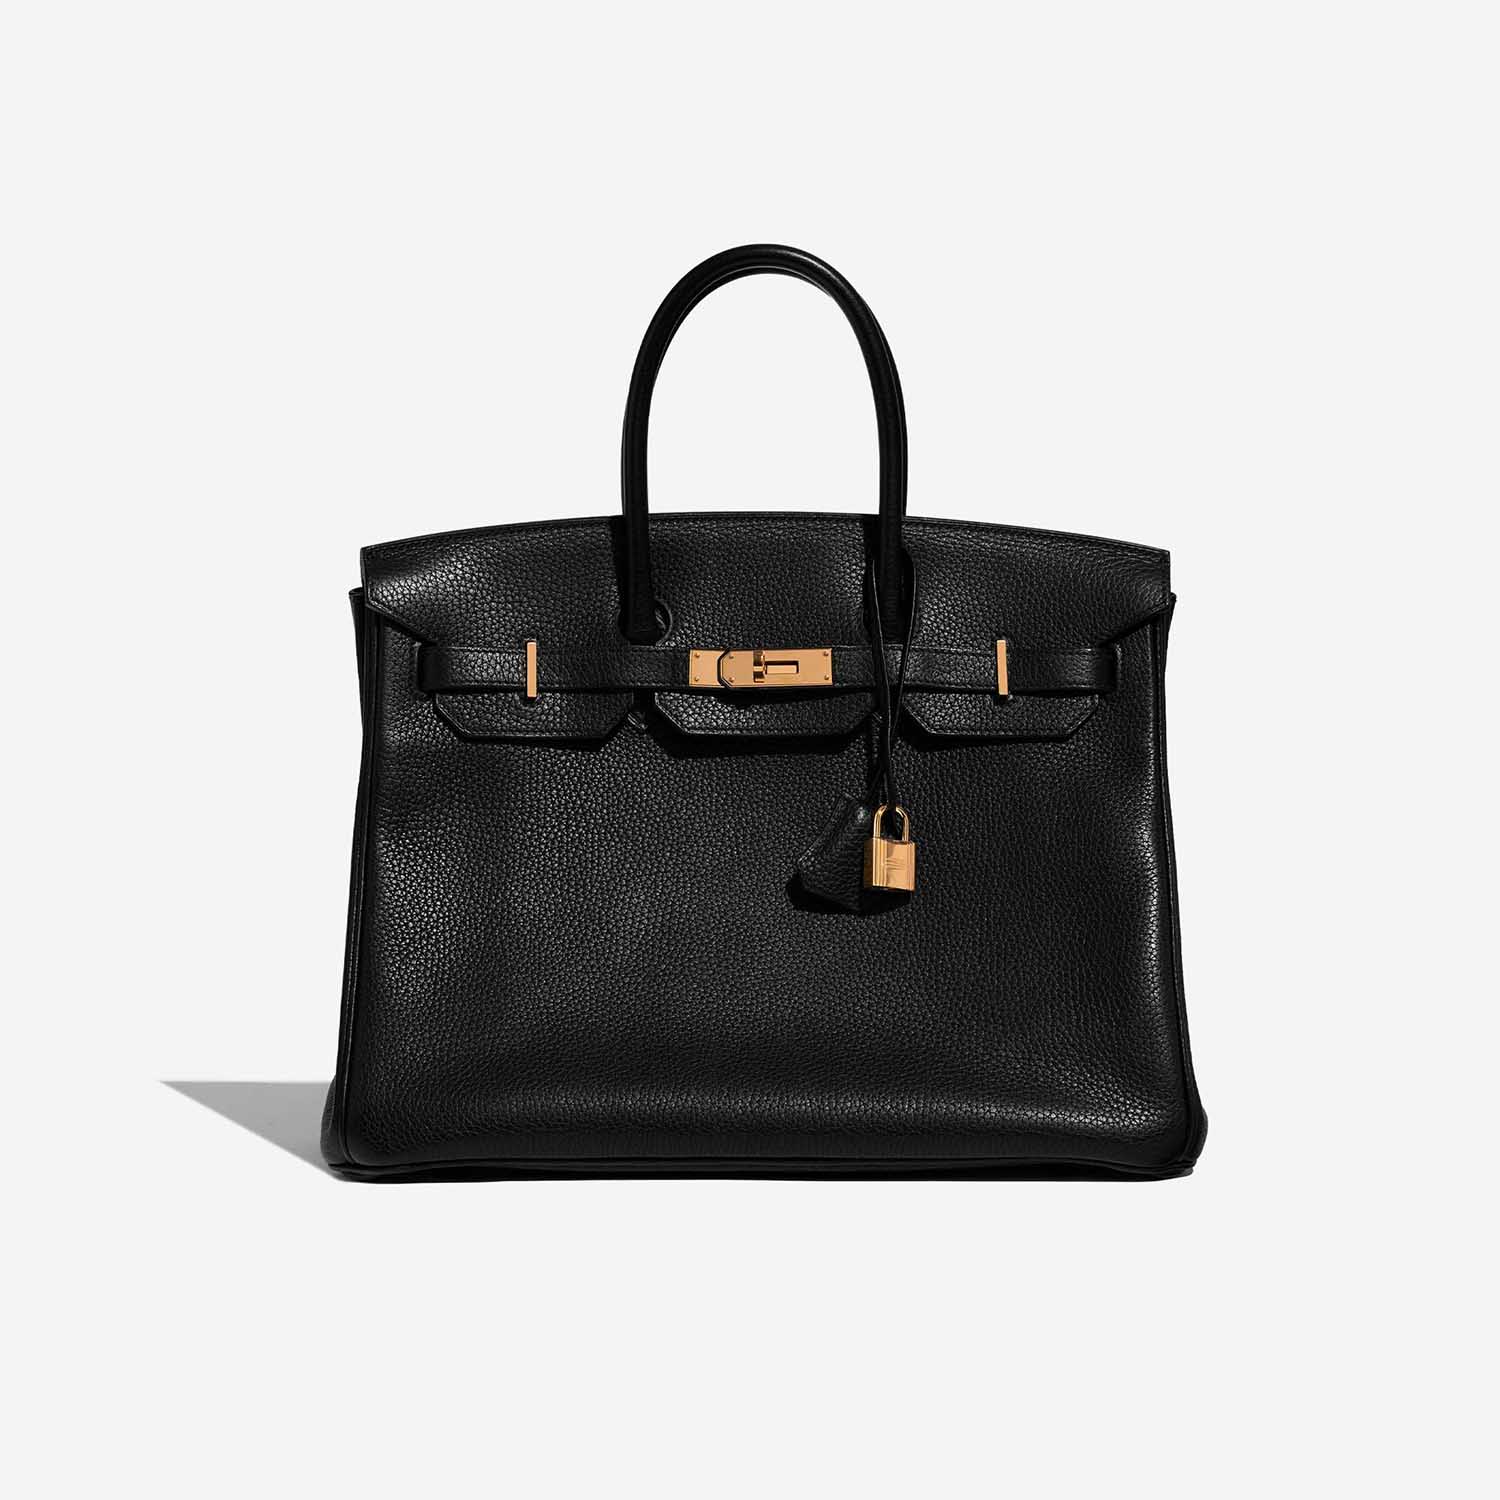 Sac Hermès d'occasion Birkin 35 Clémence Black Black Front | Vendez votre sac de créateur sur Saclab.com